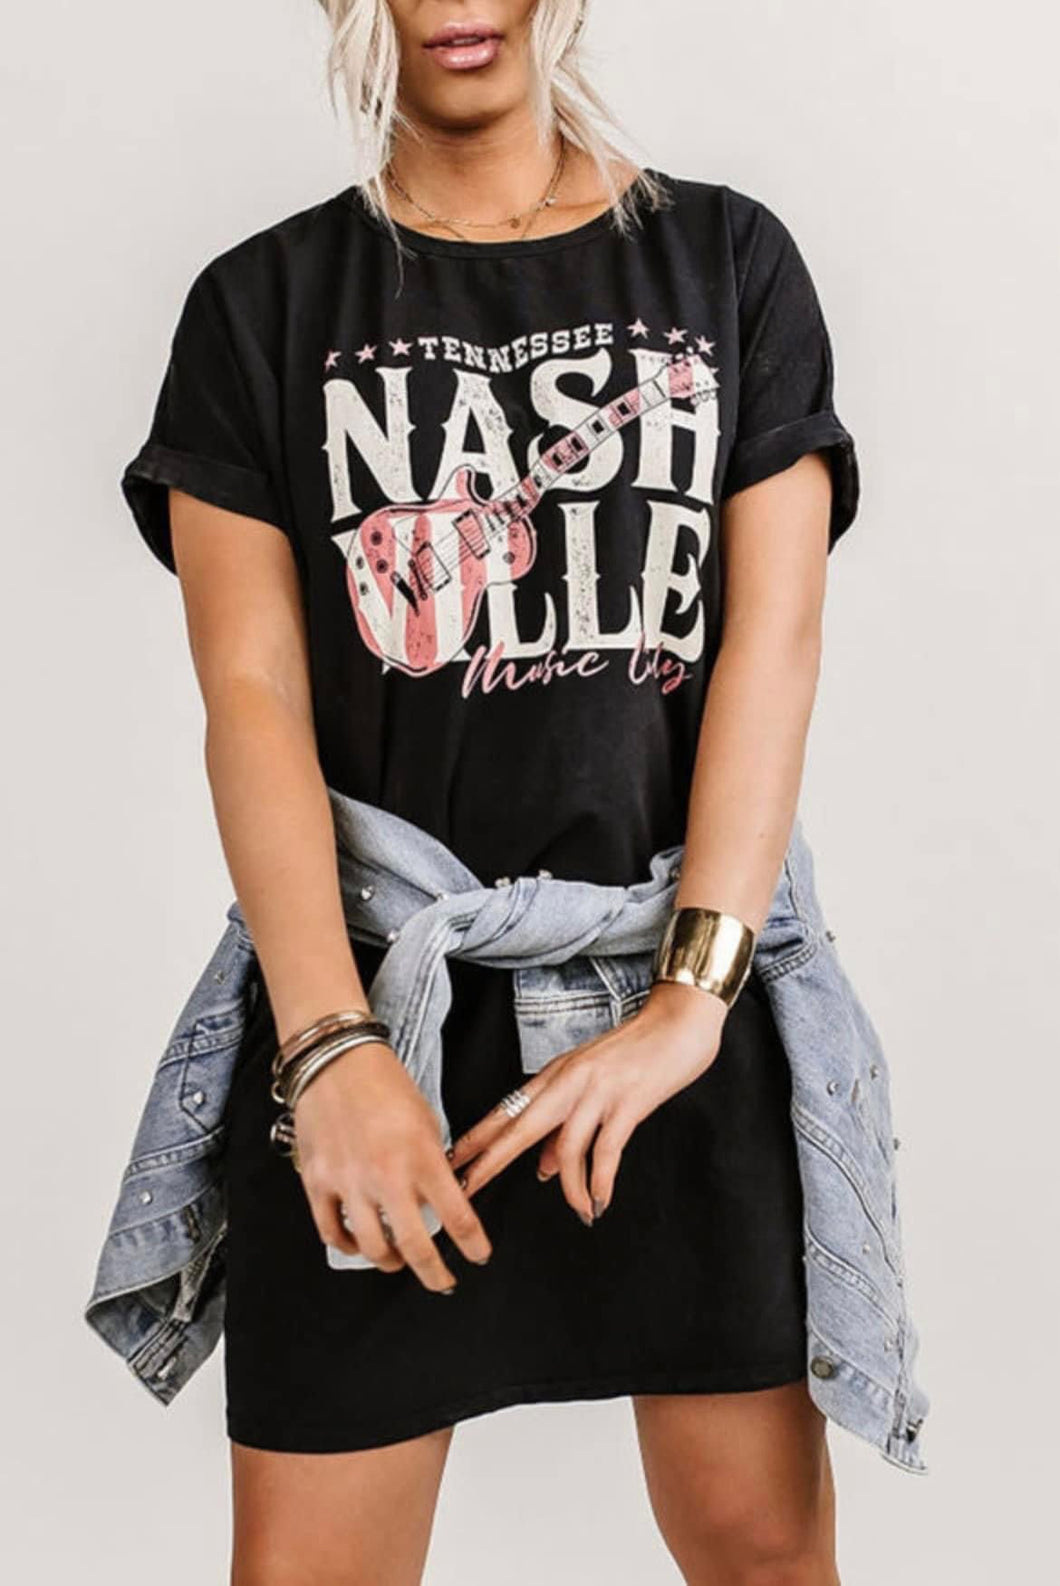 Nashville T-Shirt Dress - C&C Boutique